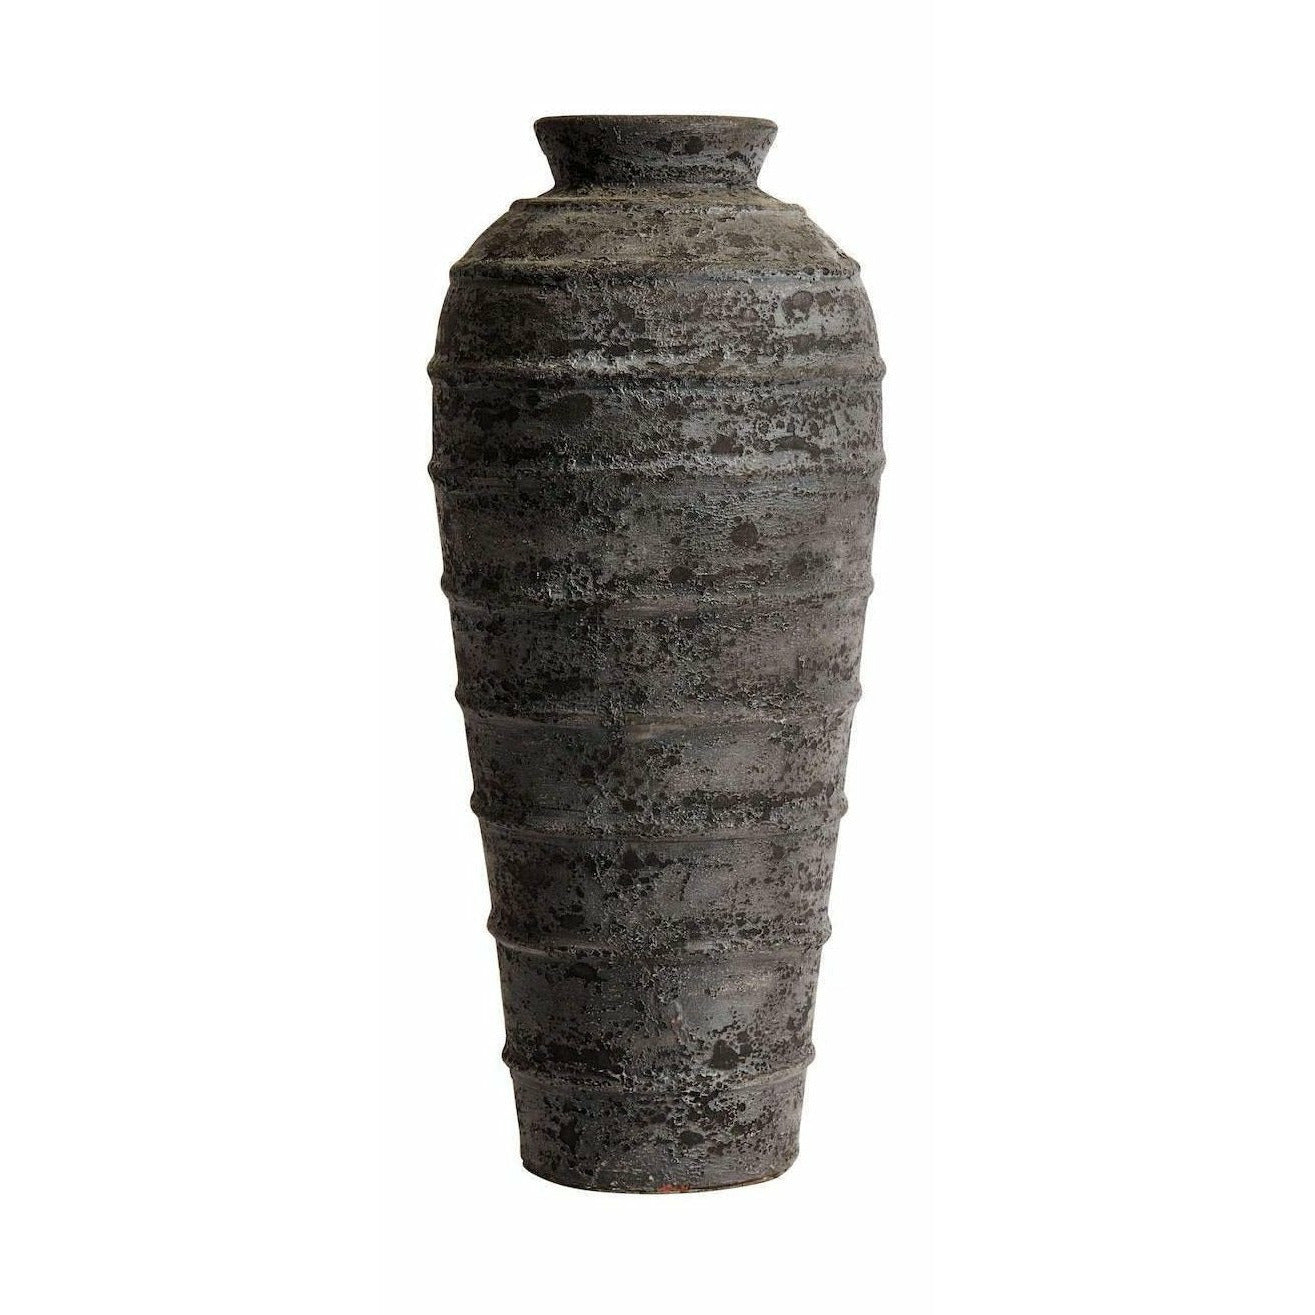 Muubs melancolia vaso terracota, 80 cm